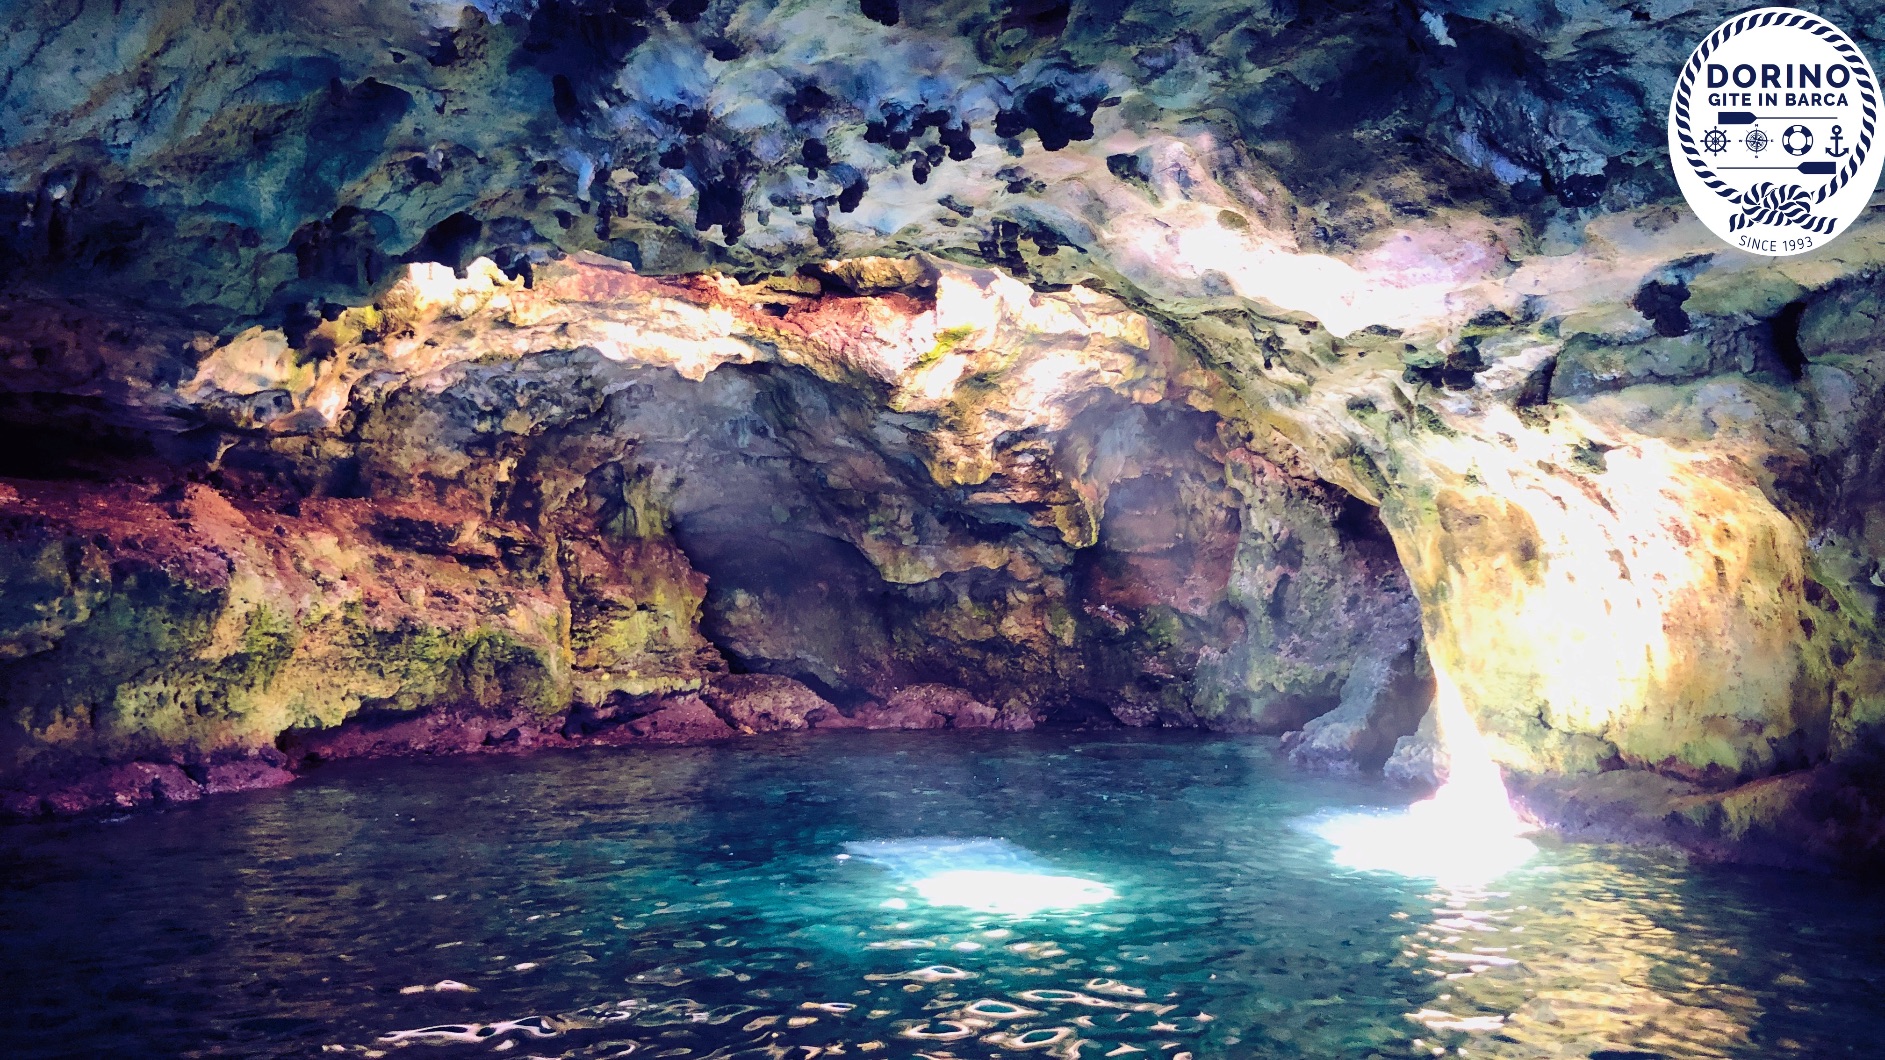 Uno dei luoghi magici di Polignano a Mare, la grotta che ha reso famoso Dorino